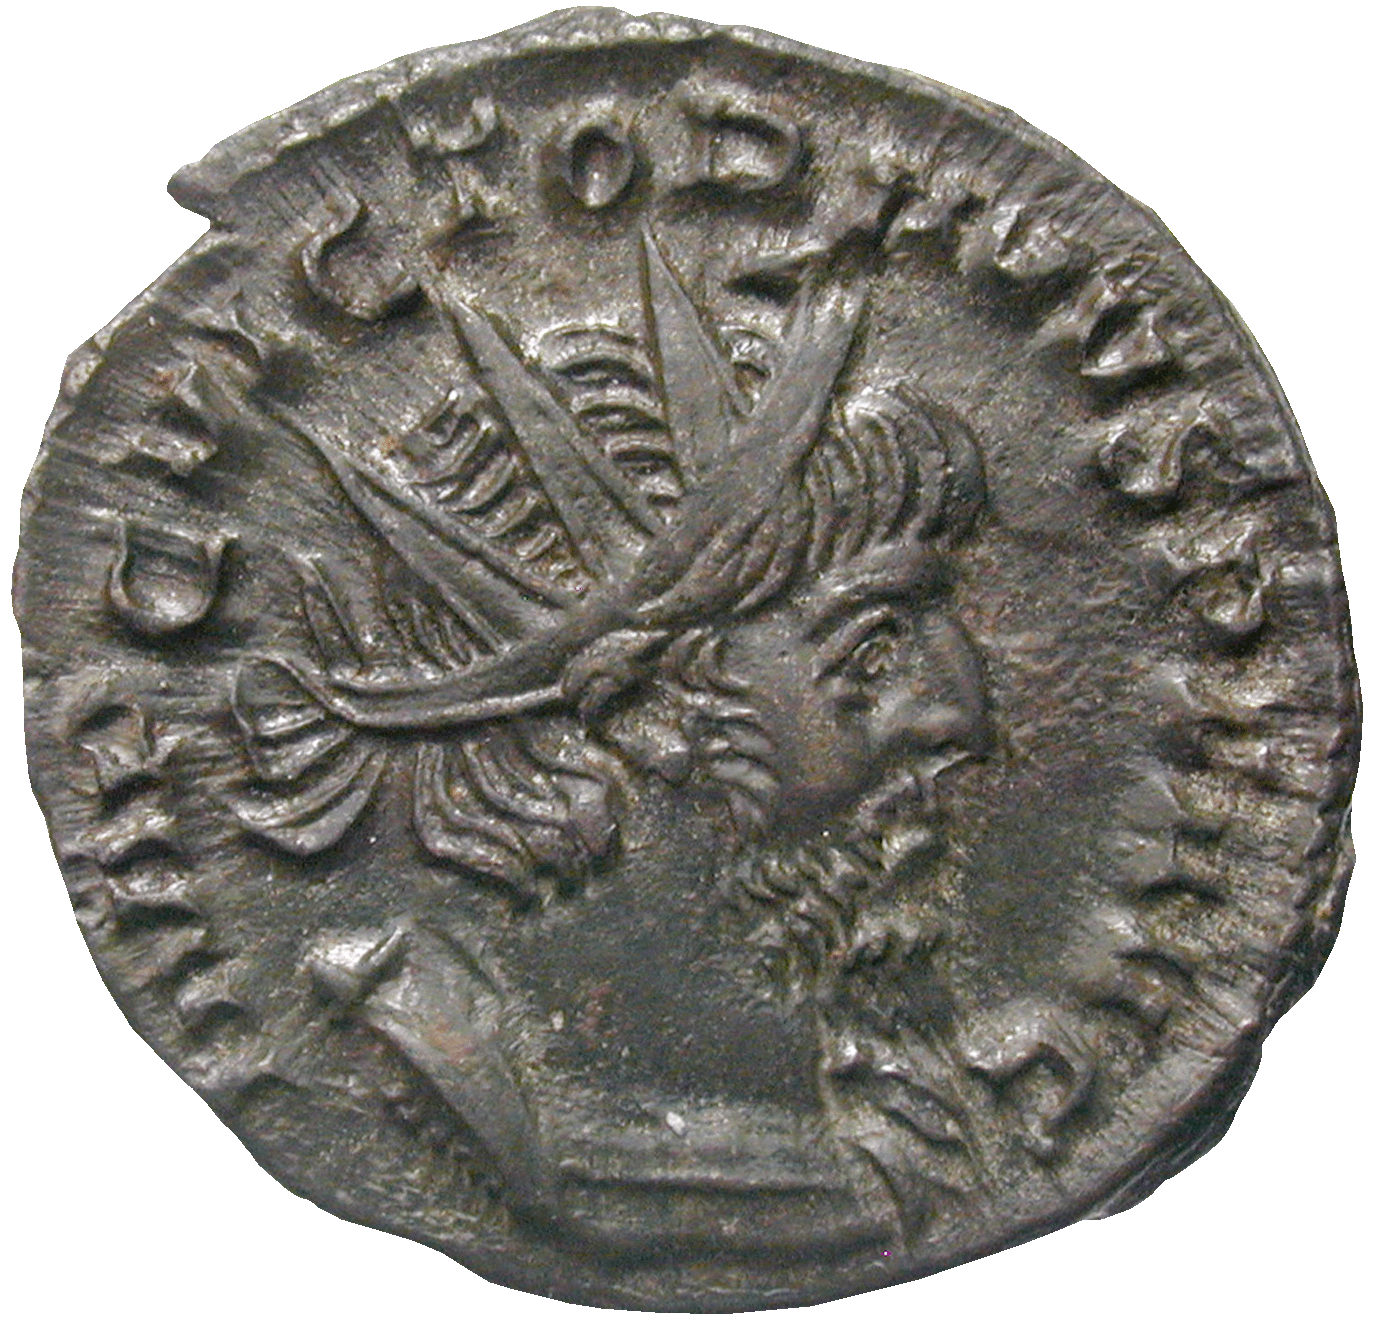 Römische Kaiserzeit, Imperium Galliarum, Victorinus, Antoninian (obverse)